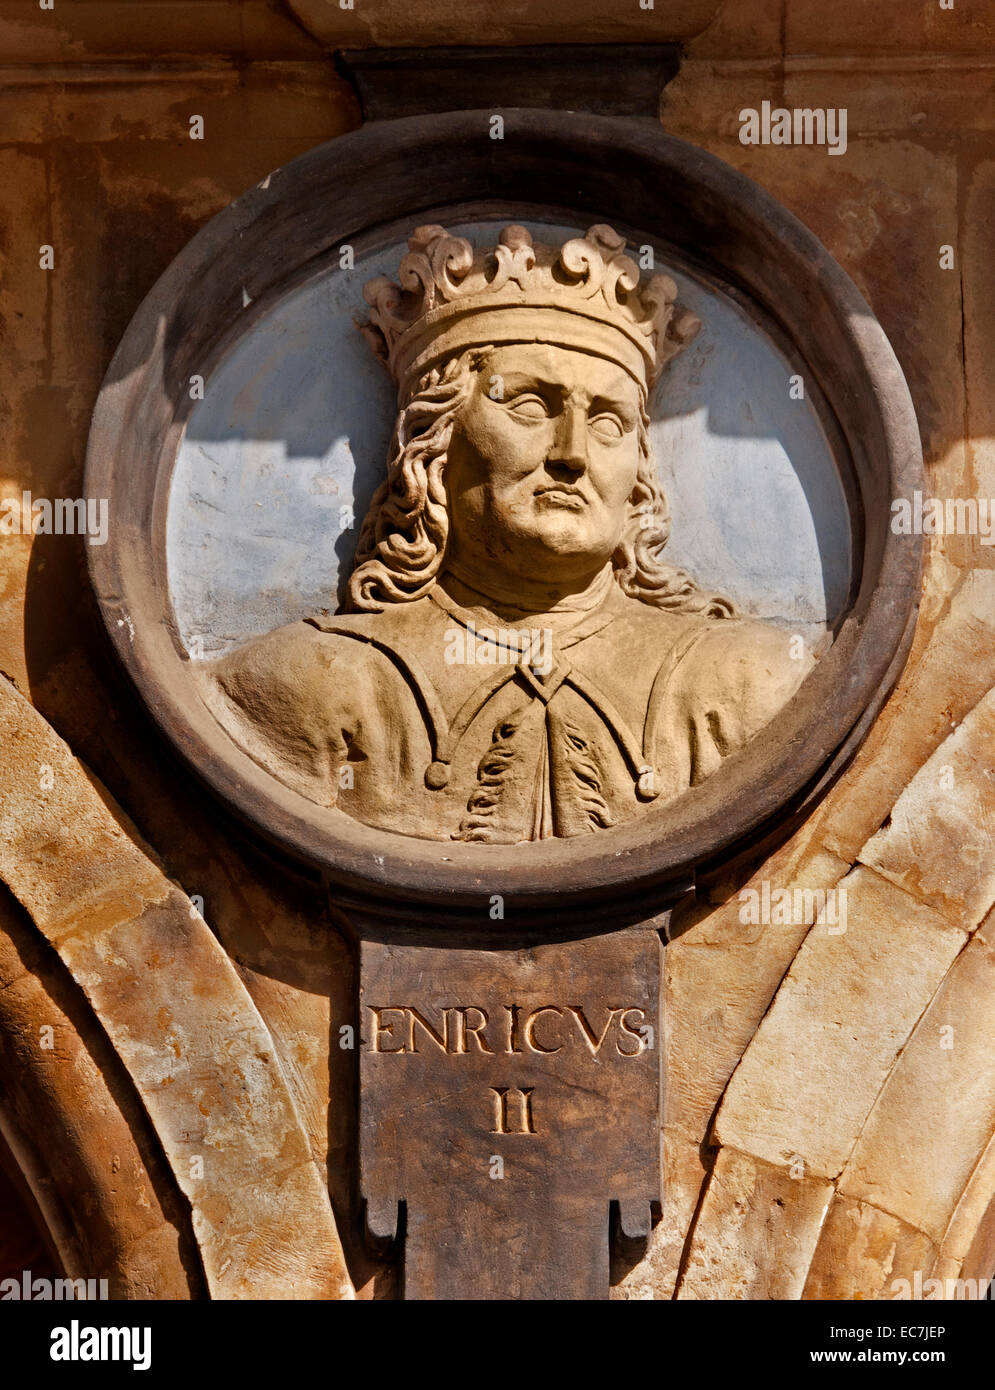 II ( Enricvs cruzado Medieval ) Enrique II, Rey de España, el Real España ( Plaza Mayor Salamanca ) Foto de stock